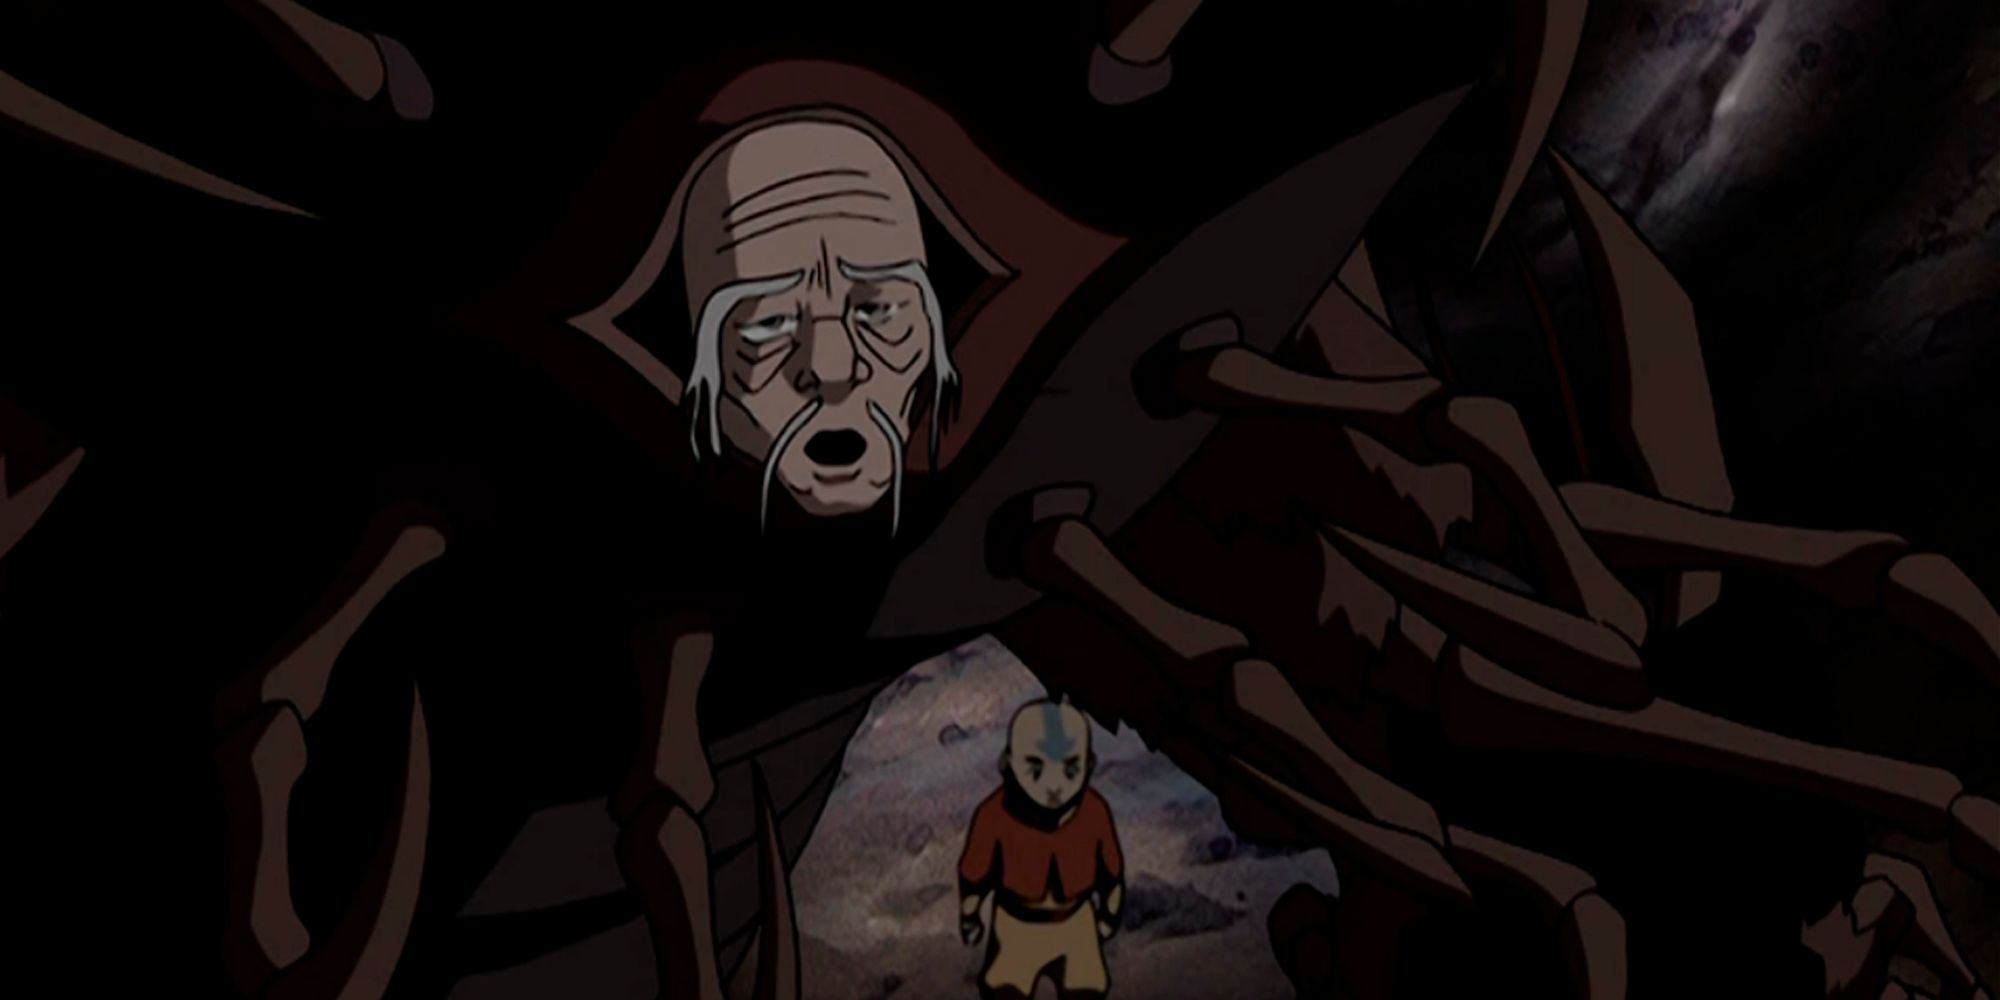 Koh usando o rosto de um homem mais velho enquanto caminhava acima de Aang no Mundo Espiritual em Avatar The Last Airbender